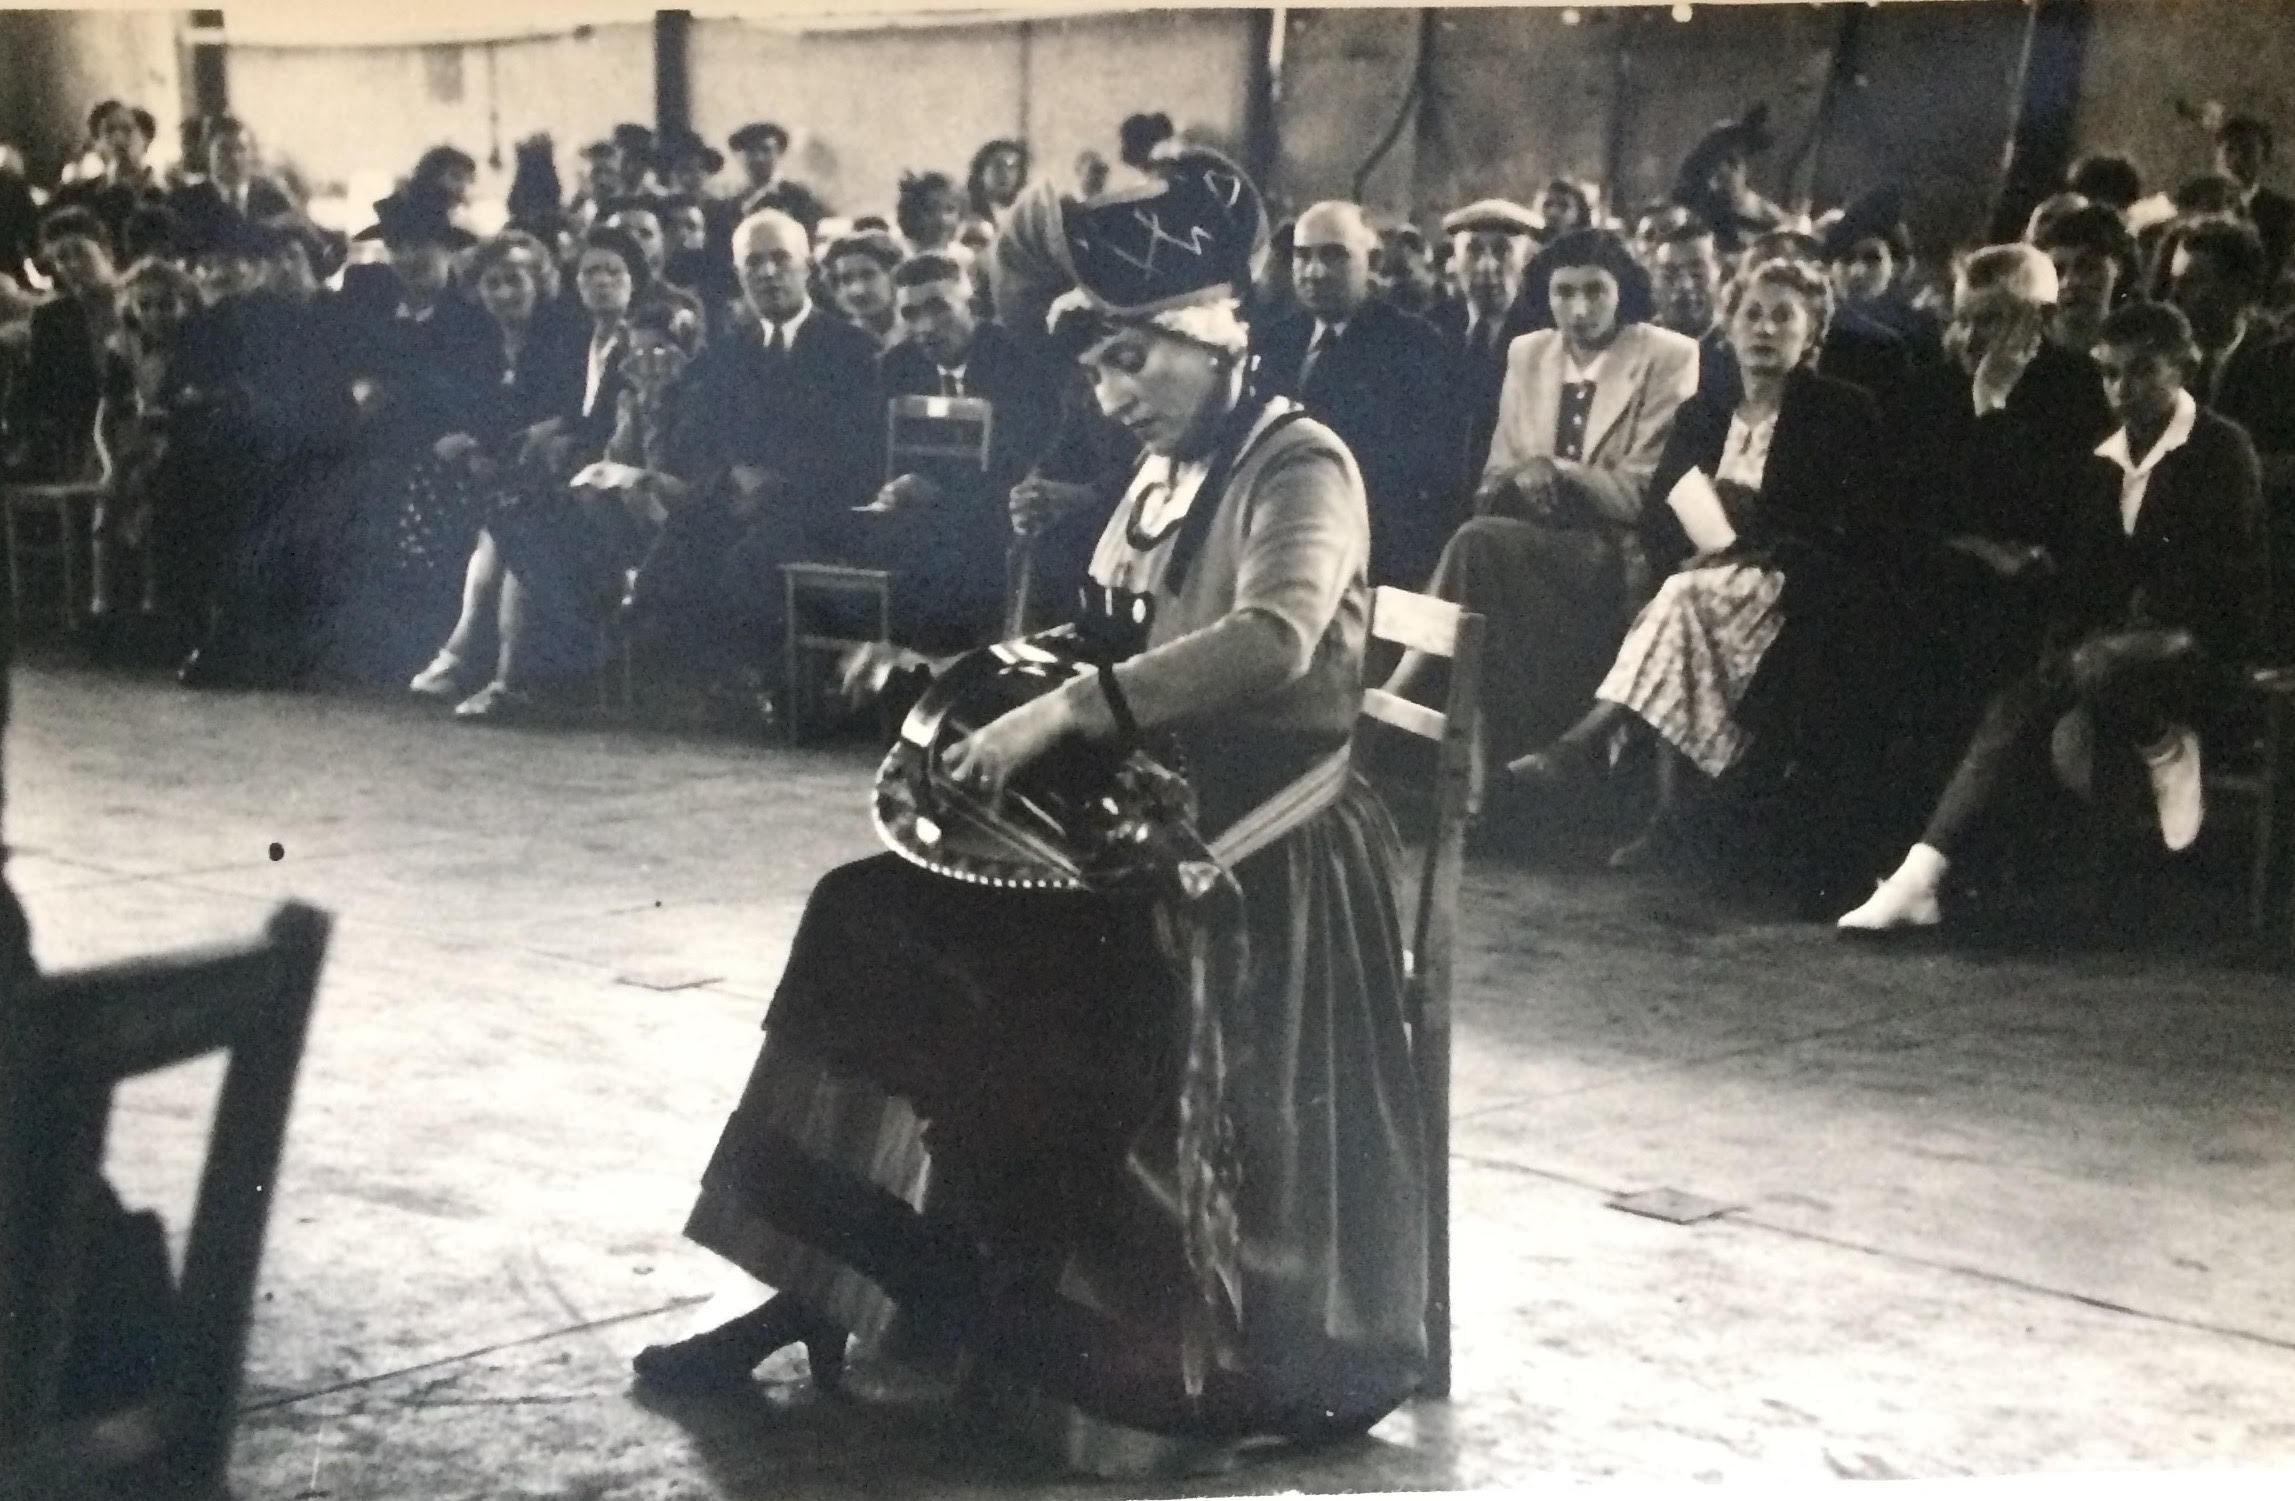 La vielleuse Germaine Bertrand auditionne entre le jury et l'assistance, dans la halle de St-Amand Montrond, 14 août 1950 (Photo Rousseau pour Le Berry Républicain)